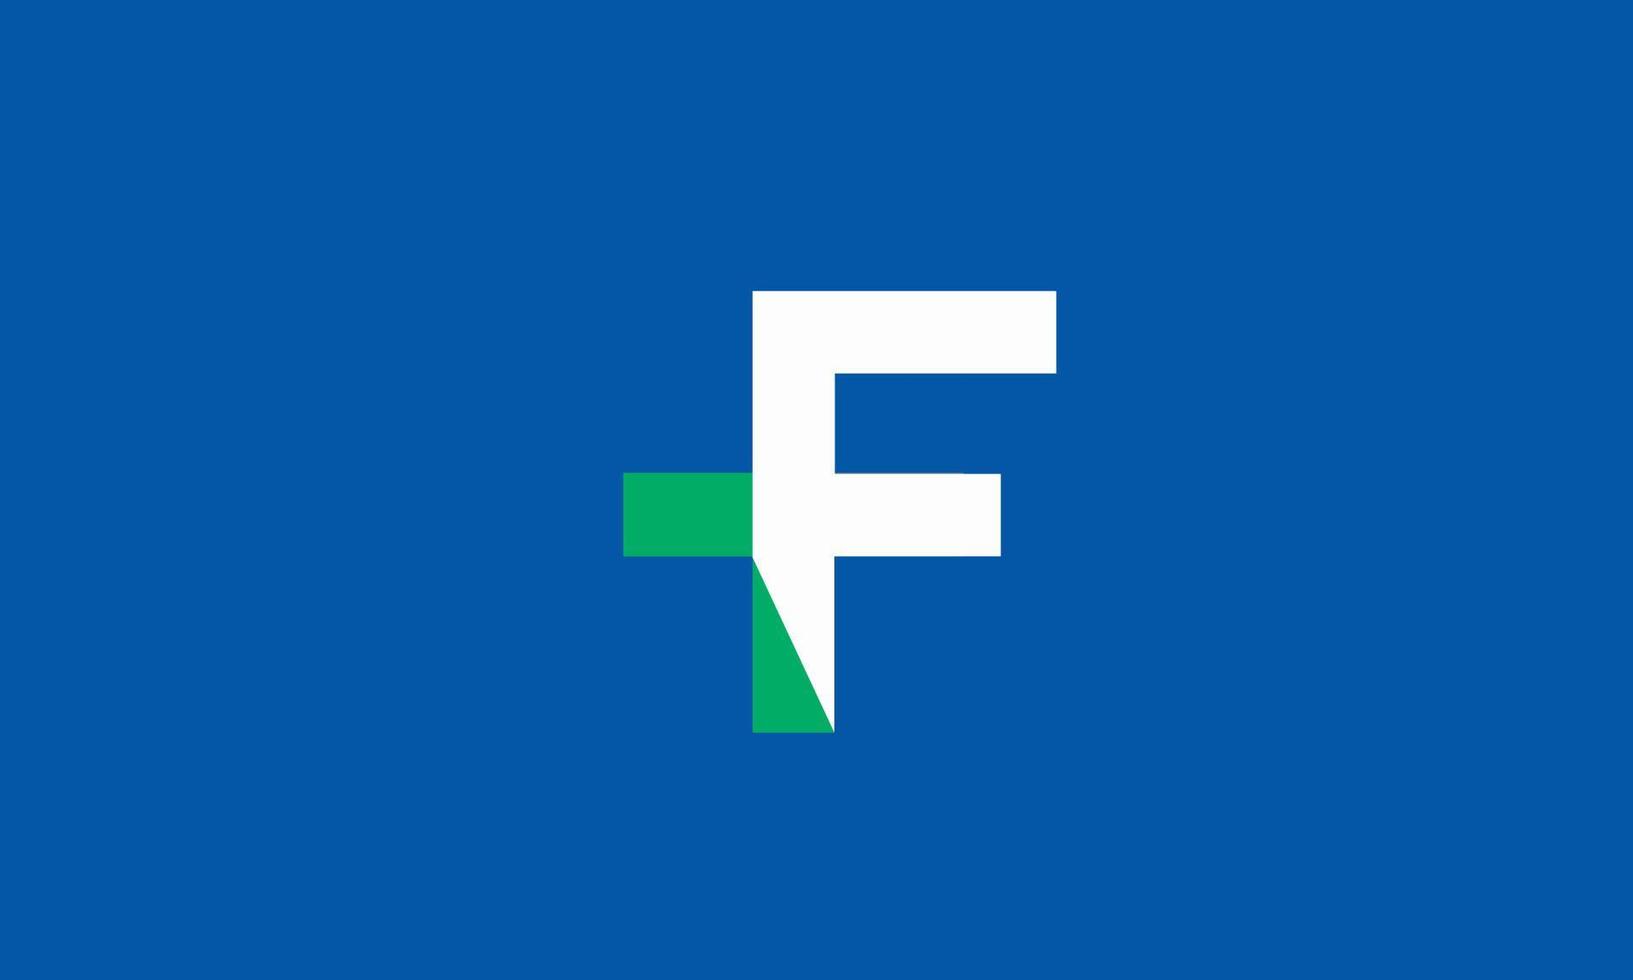 alfabet letters initialen monogram logo tf, ft, t en f vector